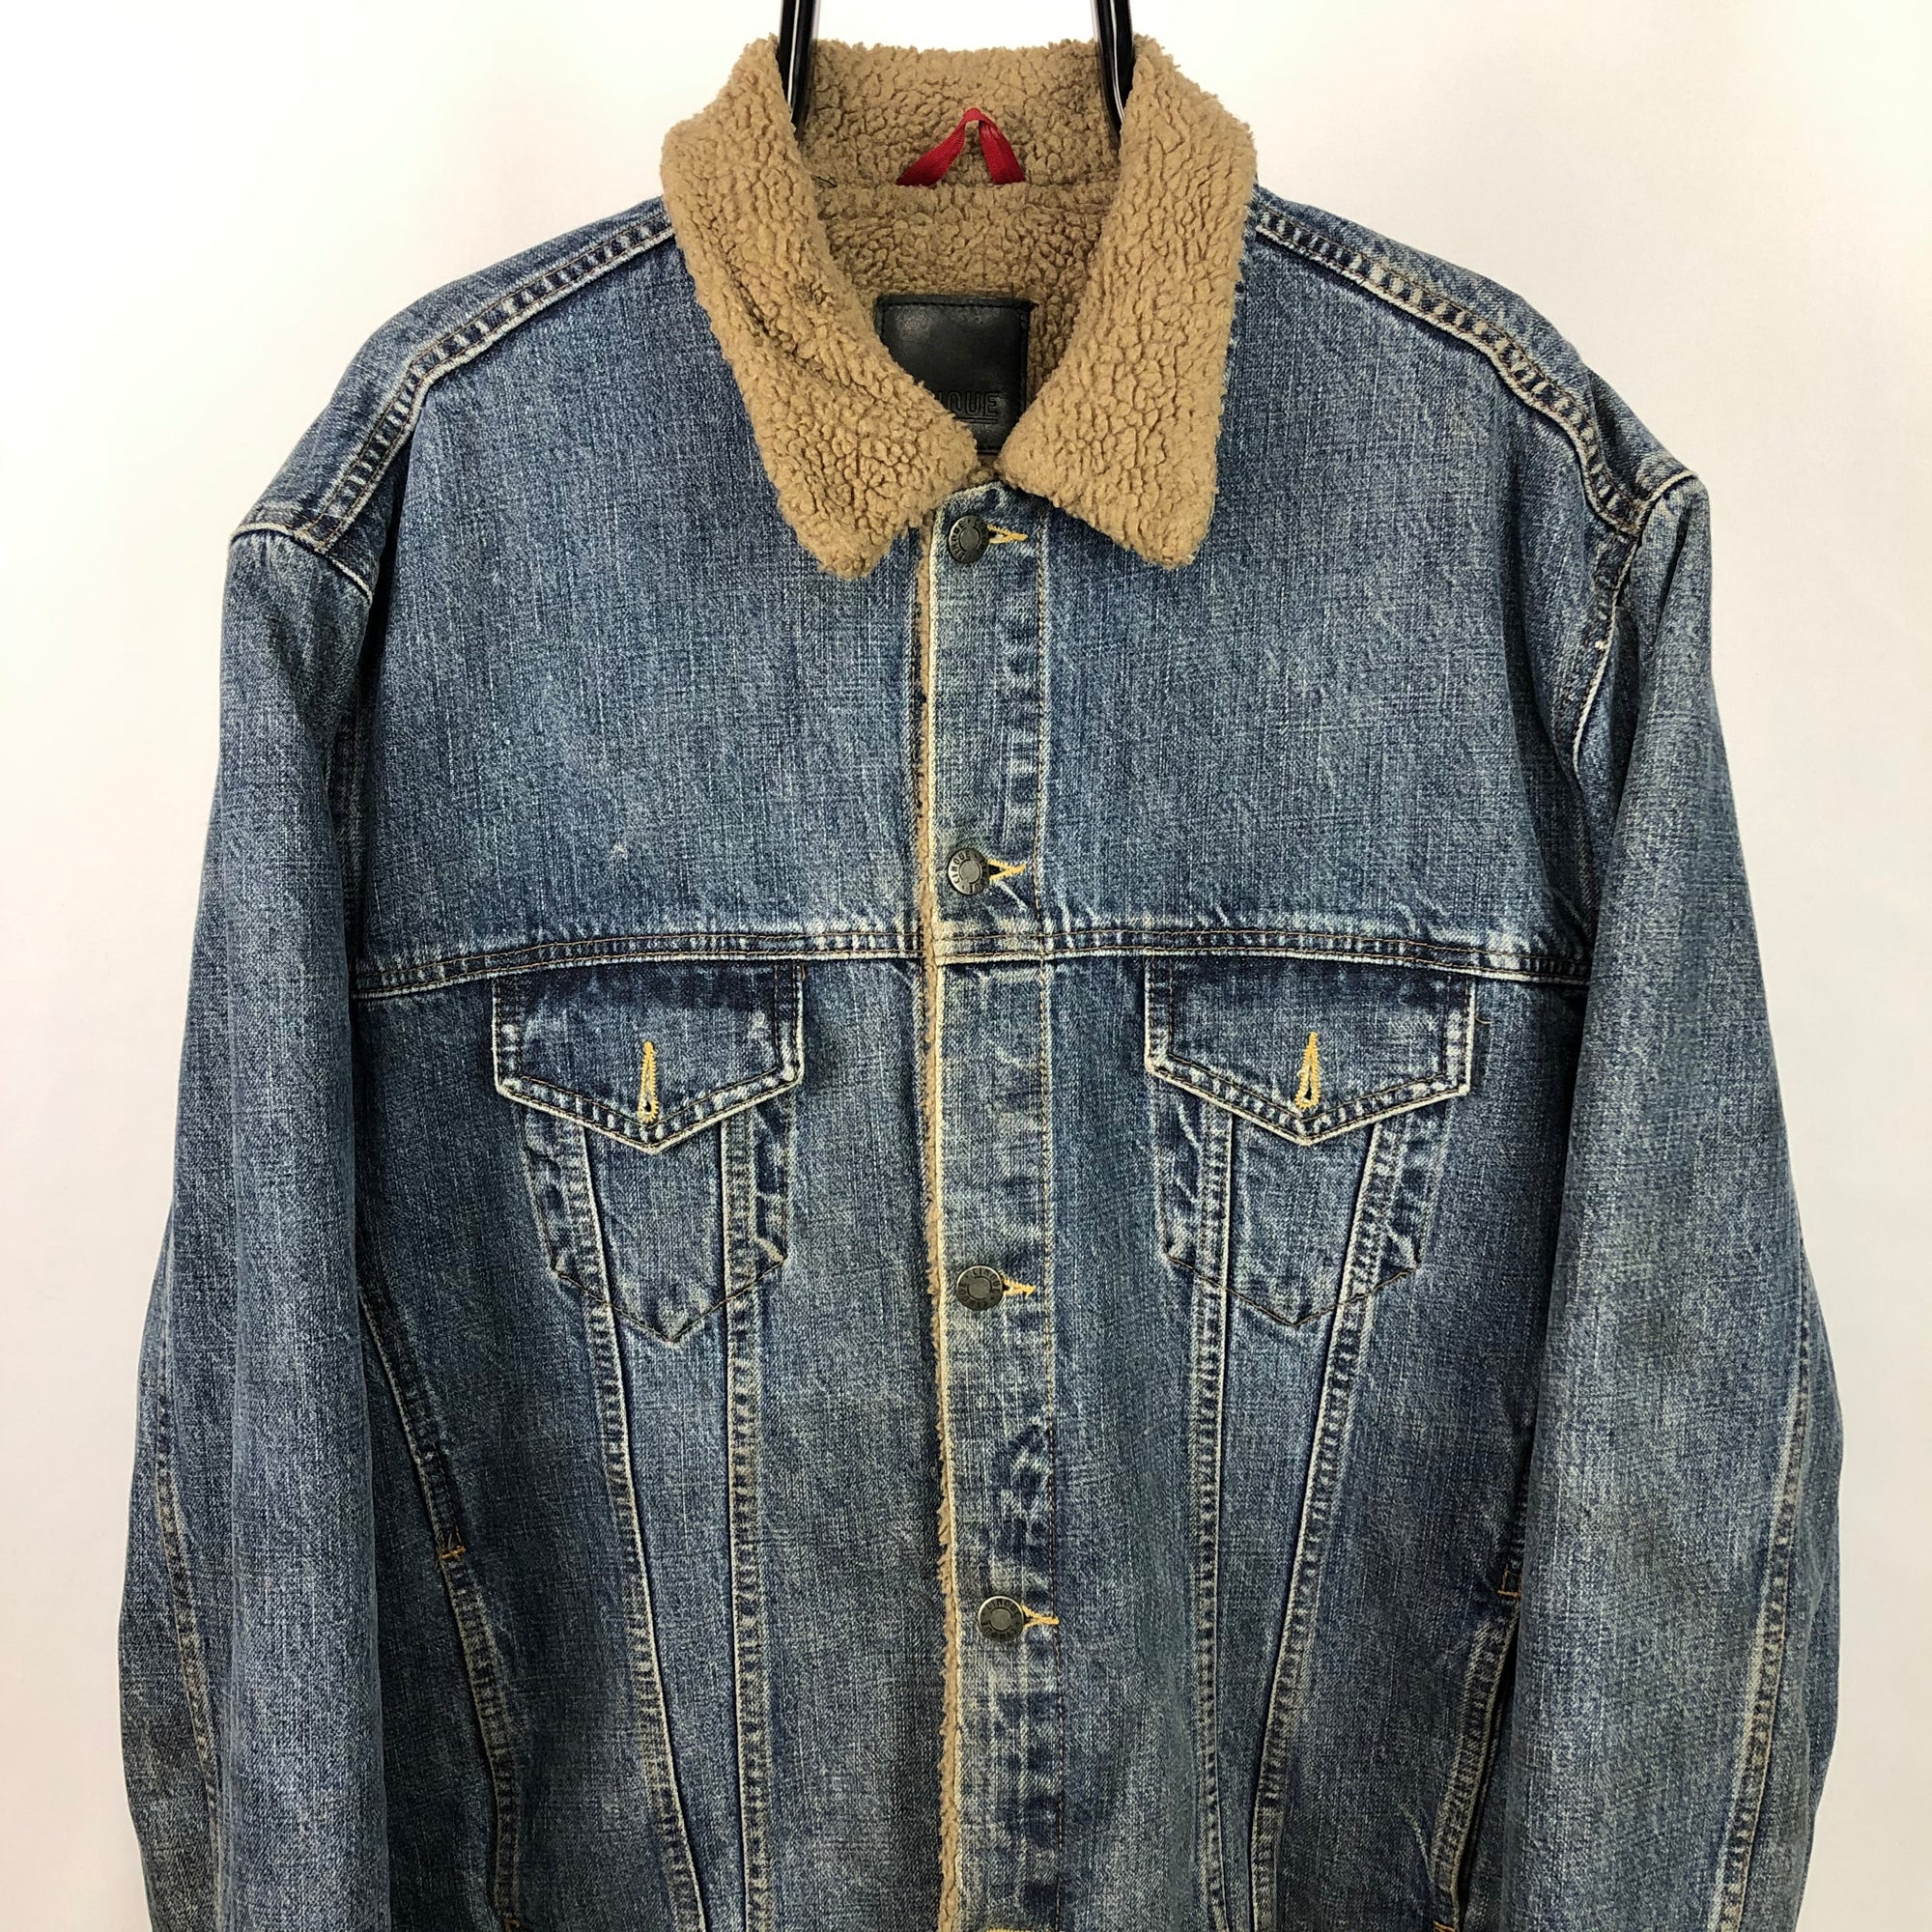 Vintage Sherpa Lined Denim Jacket - Men's XL/Women's XXL